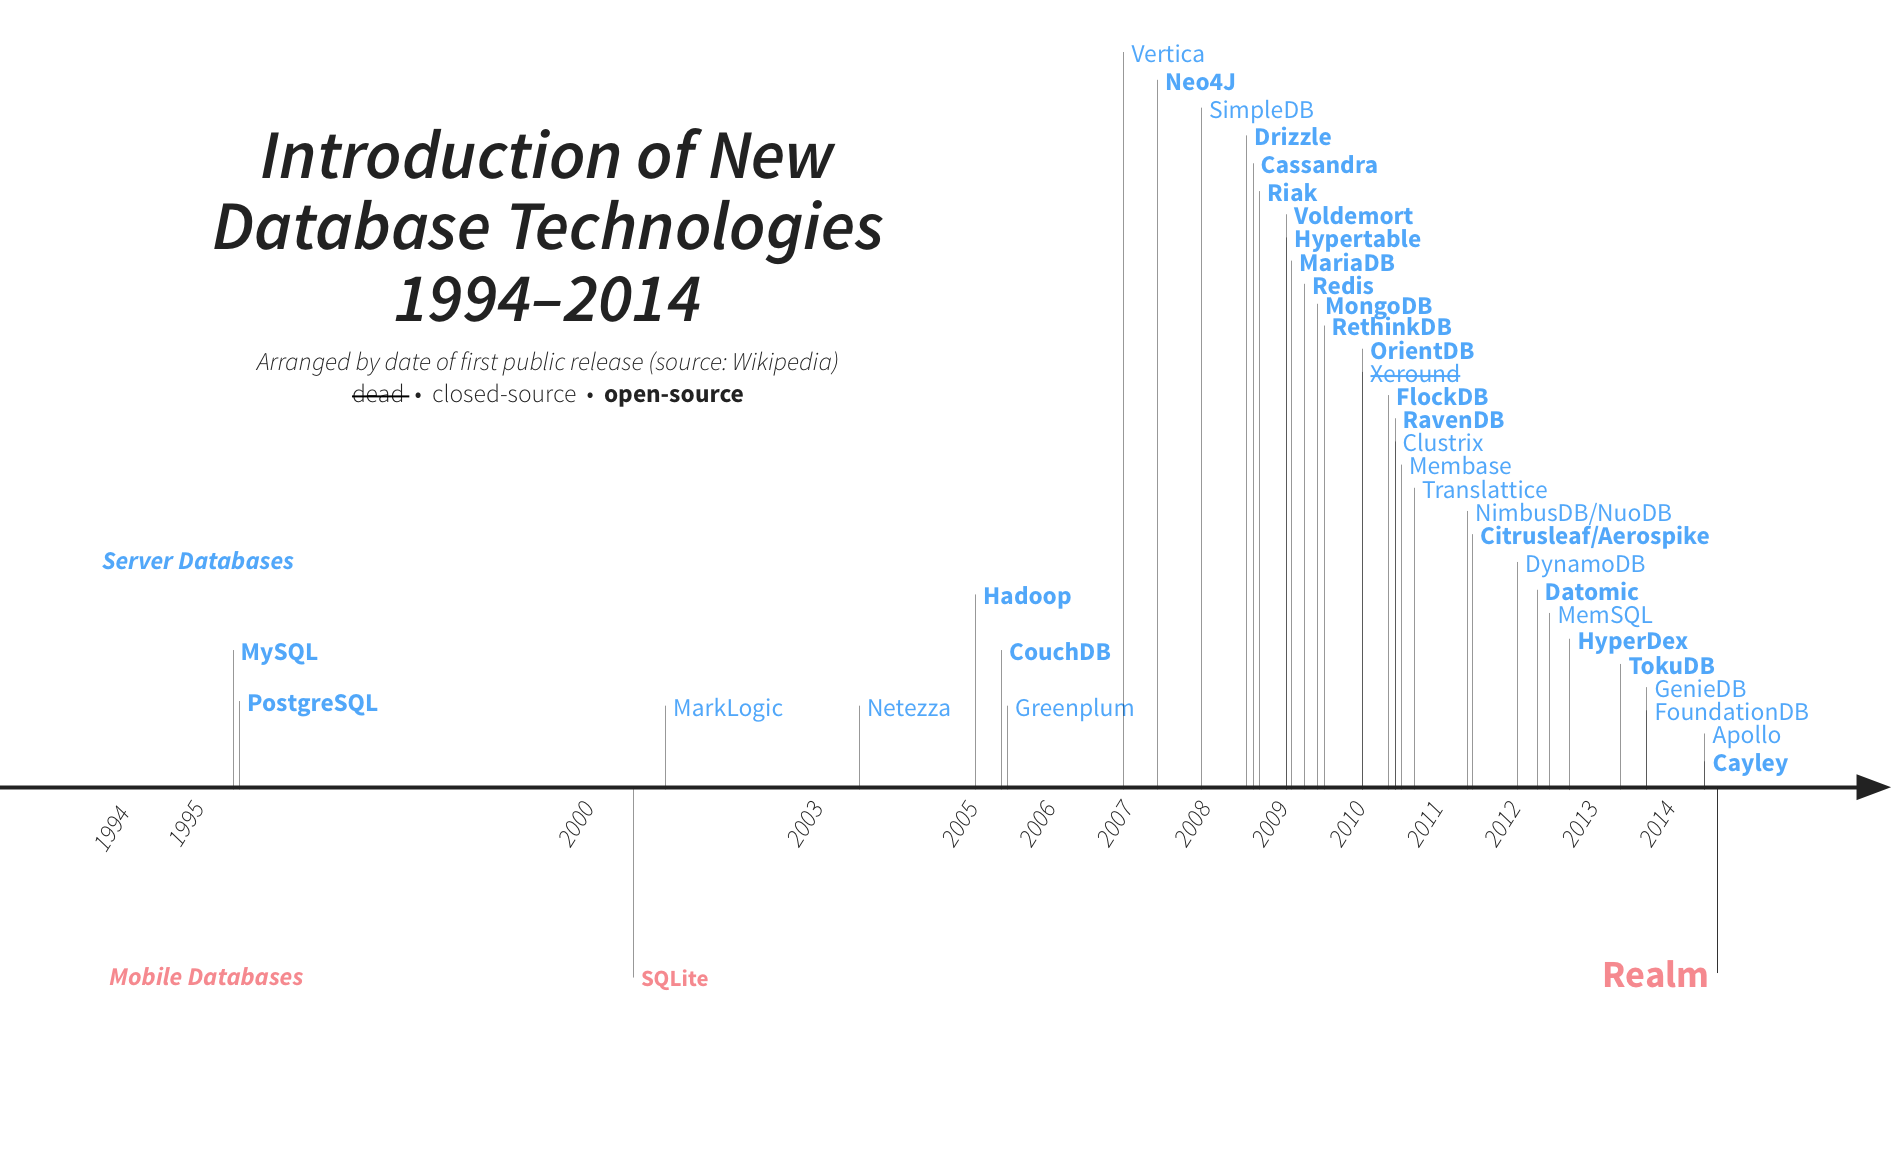 Data base technologies 2000-2014